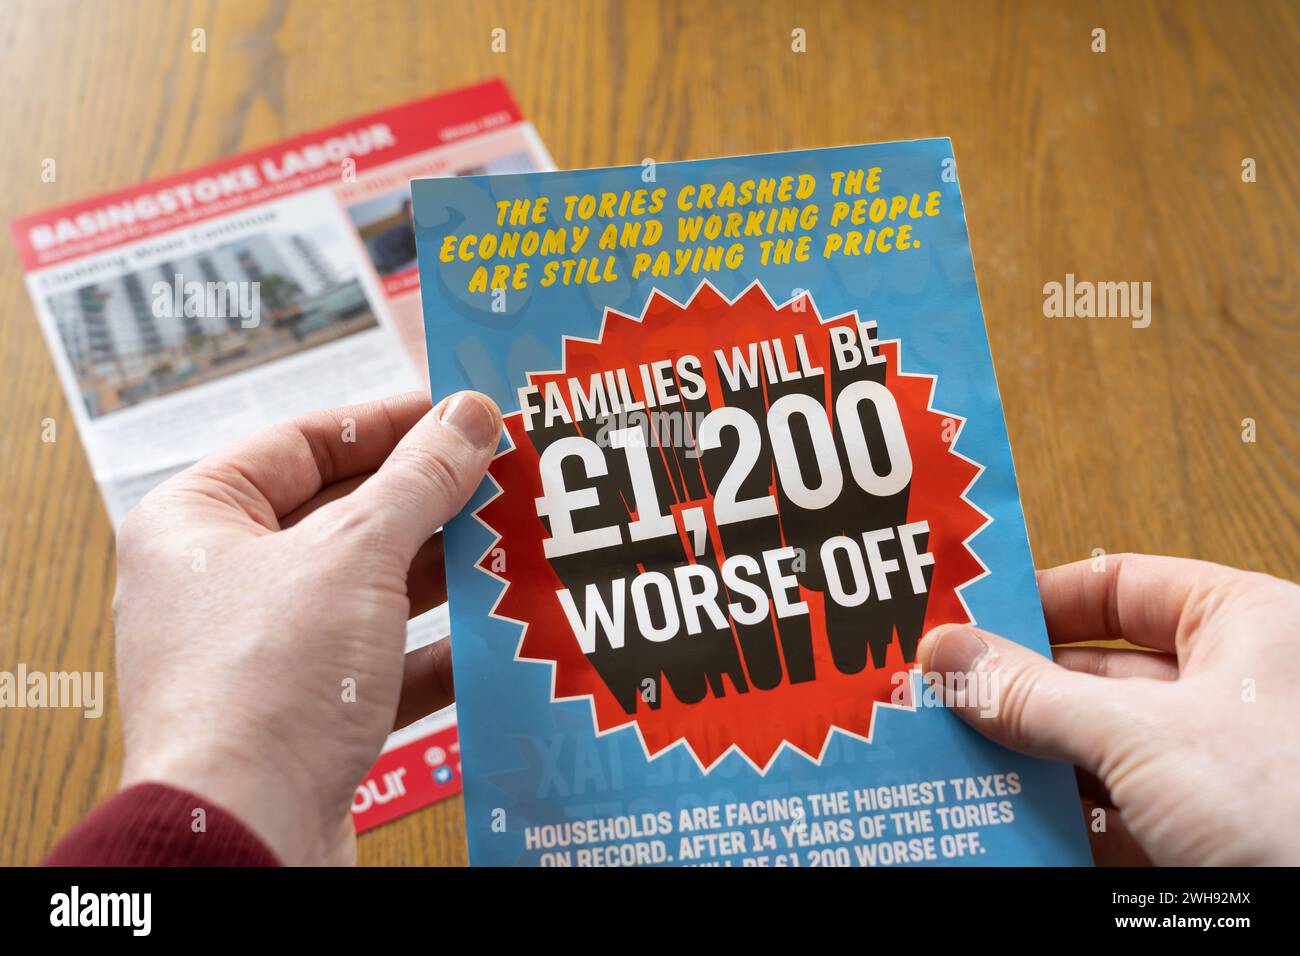 Die Hand eines Mannes hält einen Flyer von der Labour Party in Basingstoke, in dem behauptet wird, dass Familien 1.200 Pfund schlechter dran sind, seit die Tories die Wirtschaft stürzten. UK Stockfoto